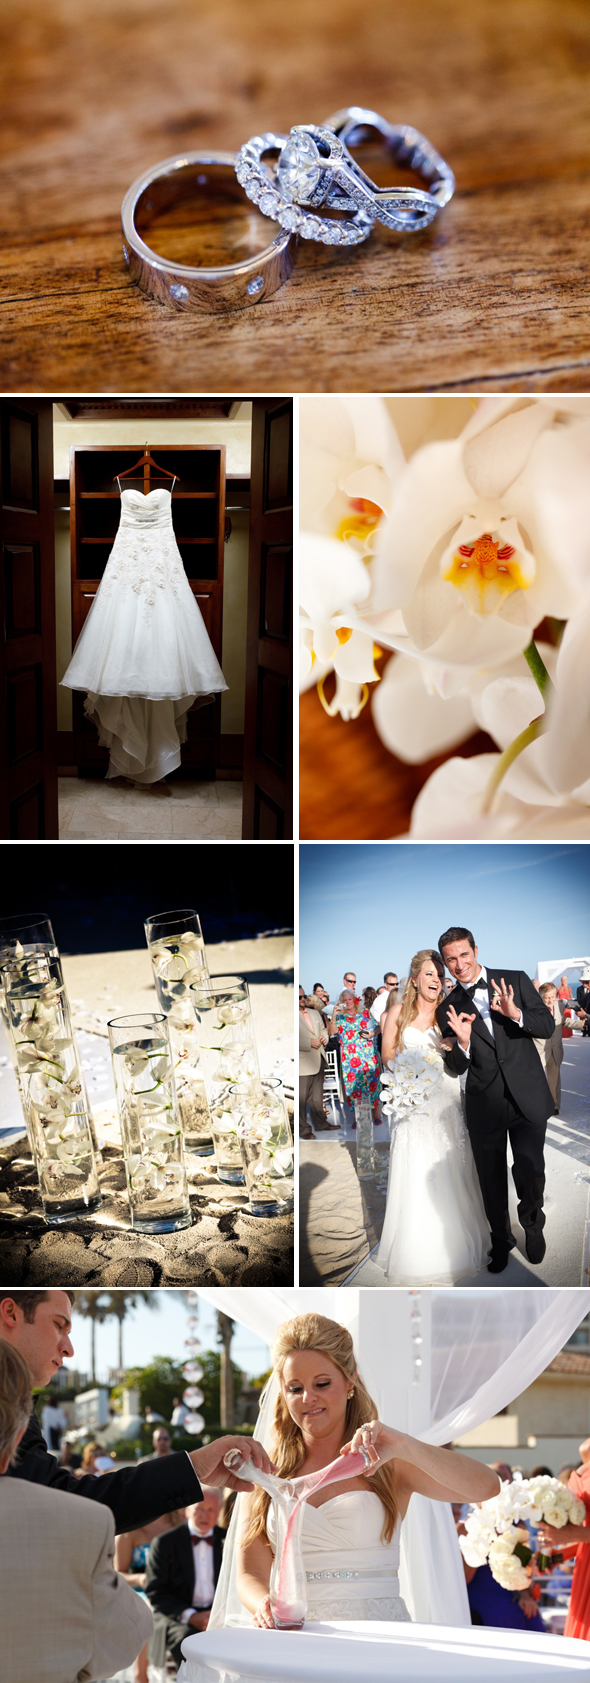 destination-wedding-ceremonies